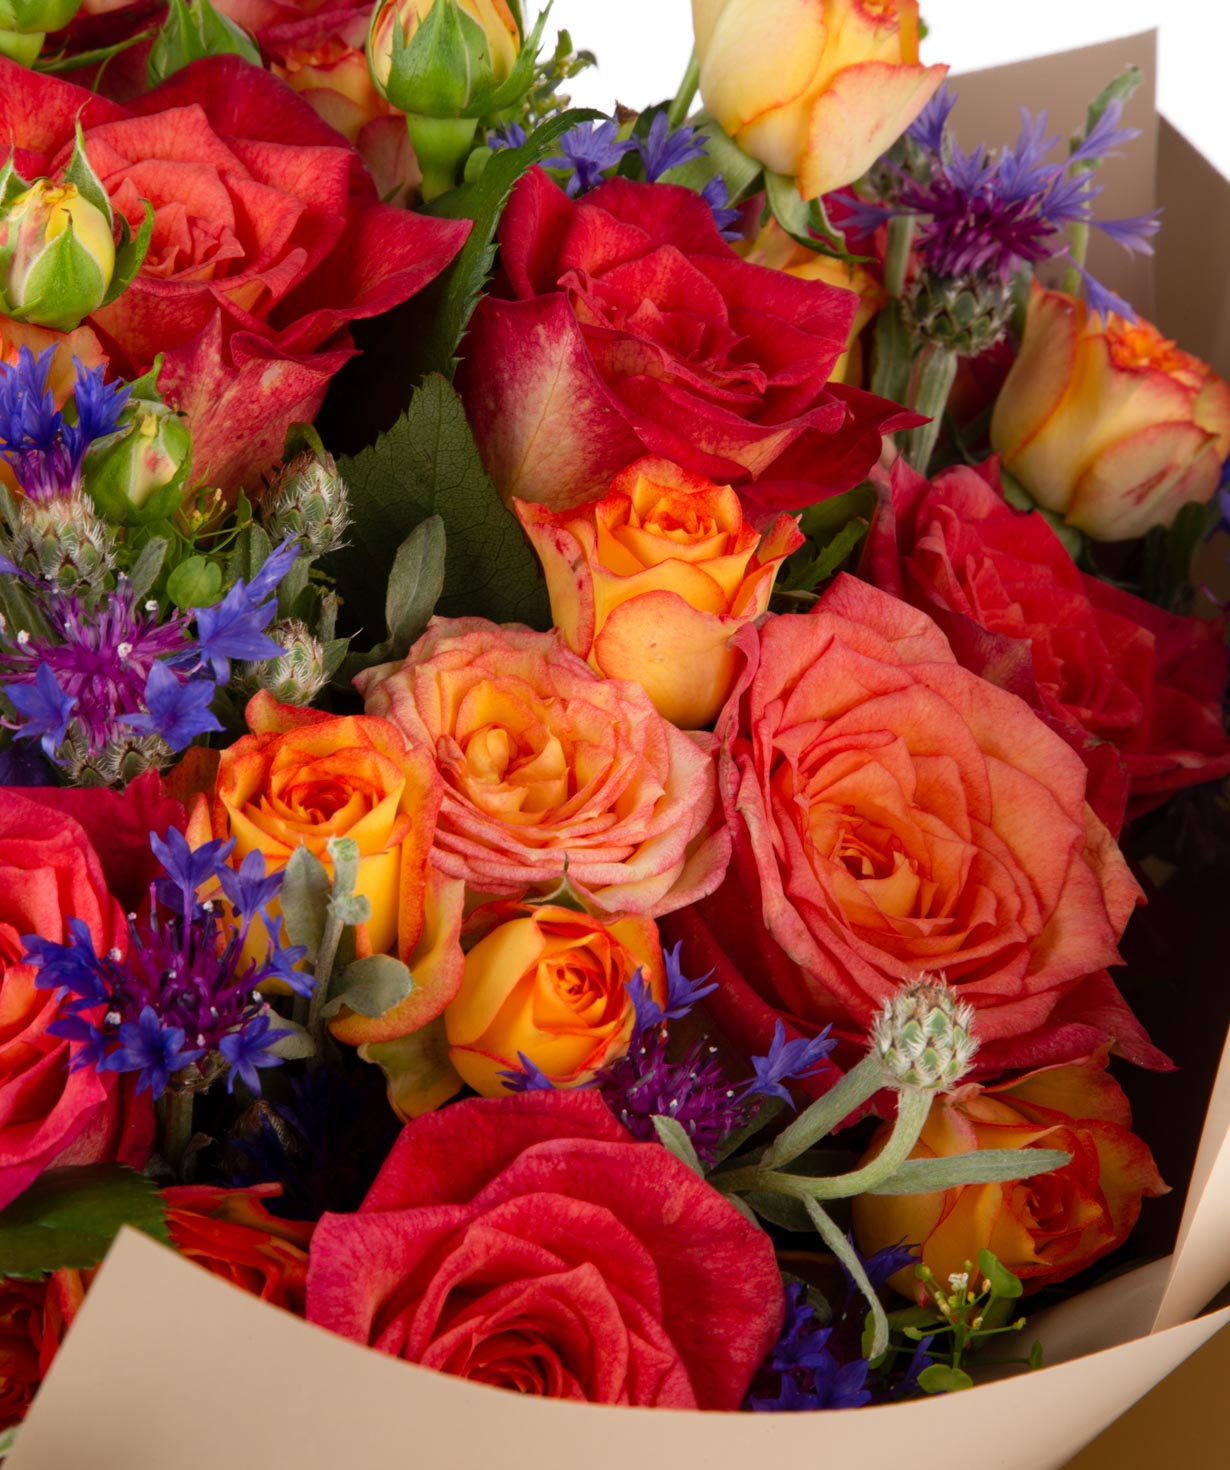 Ծաղկեփունջ «Վիլց» վարդերով և դաշտային ծաղիկներով